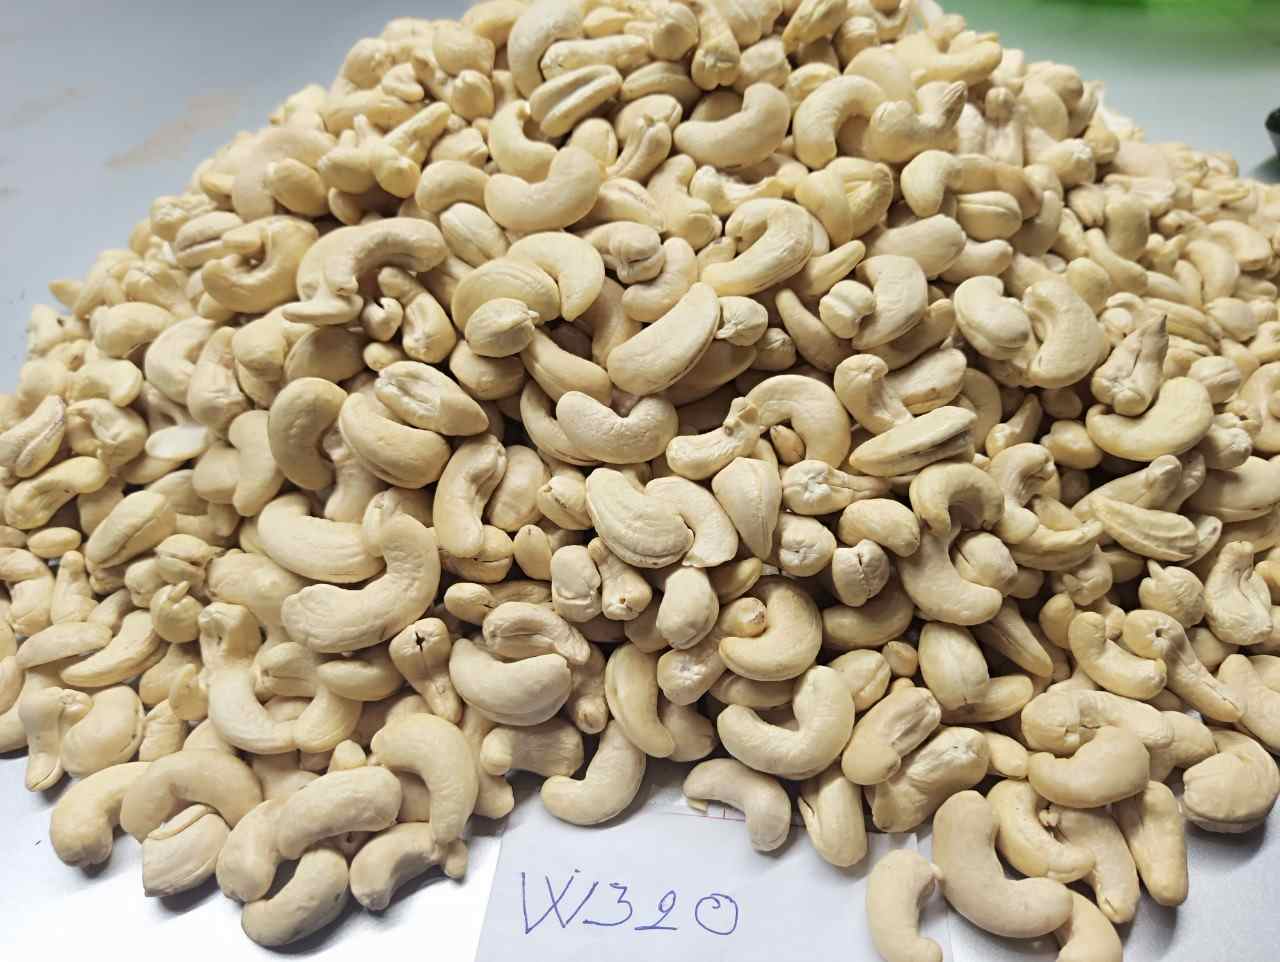 W320 cashew nut grade chart – Raw Image About W320 cashew nuts